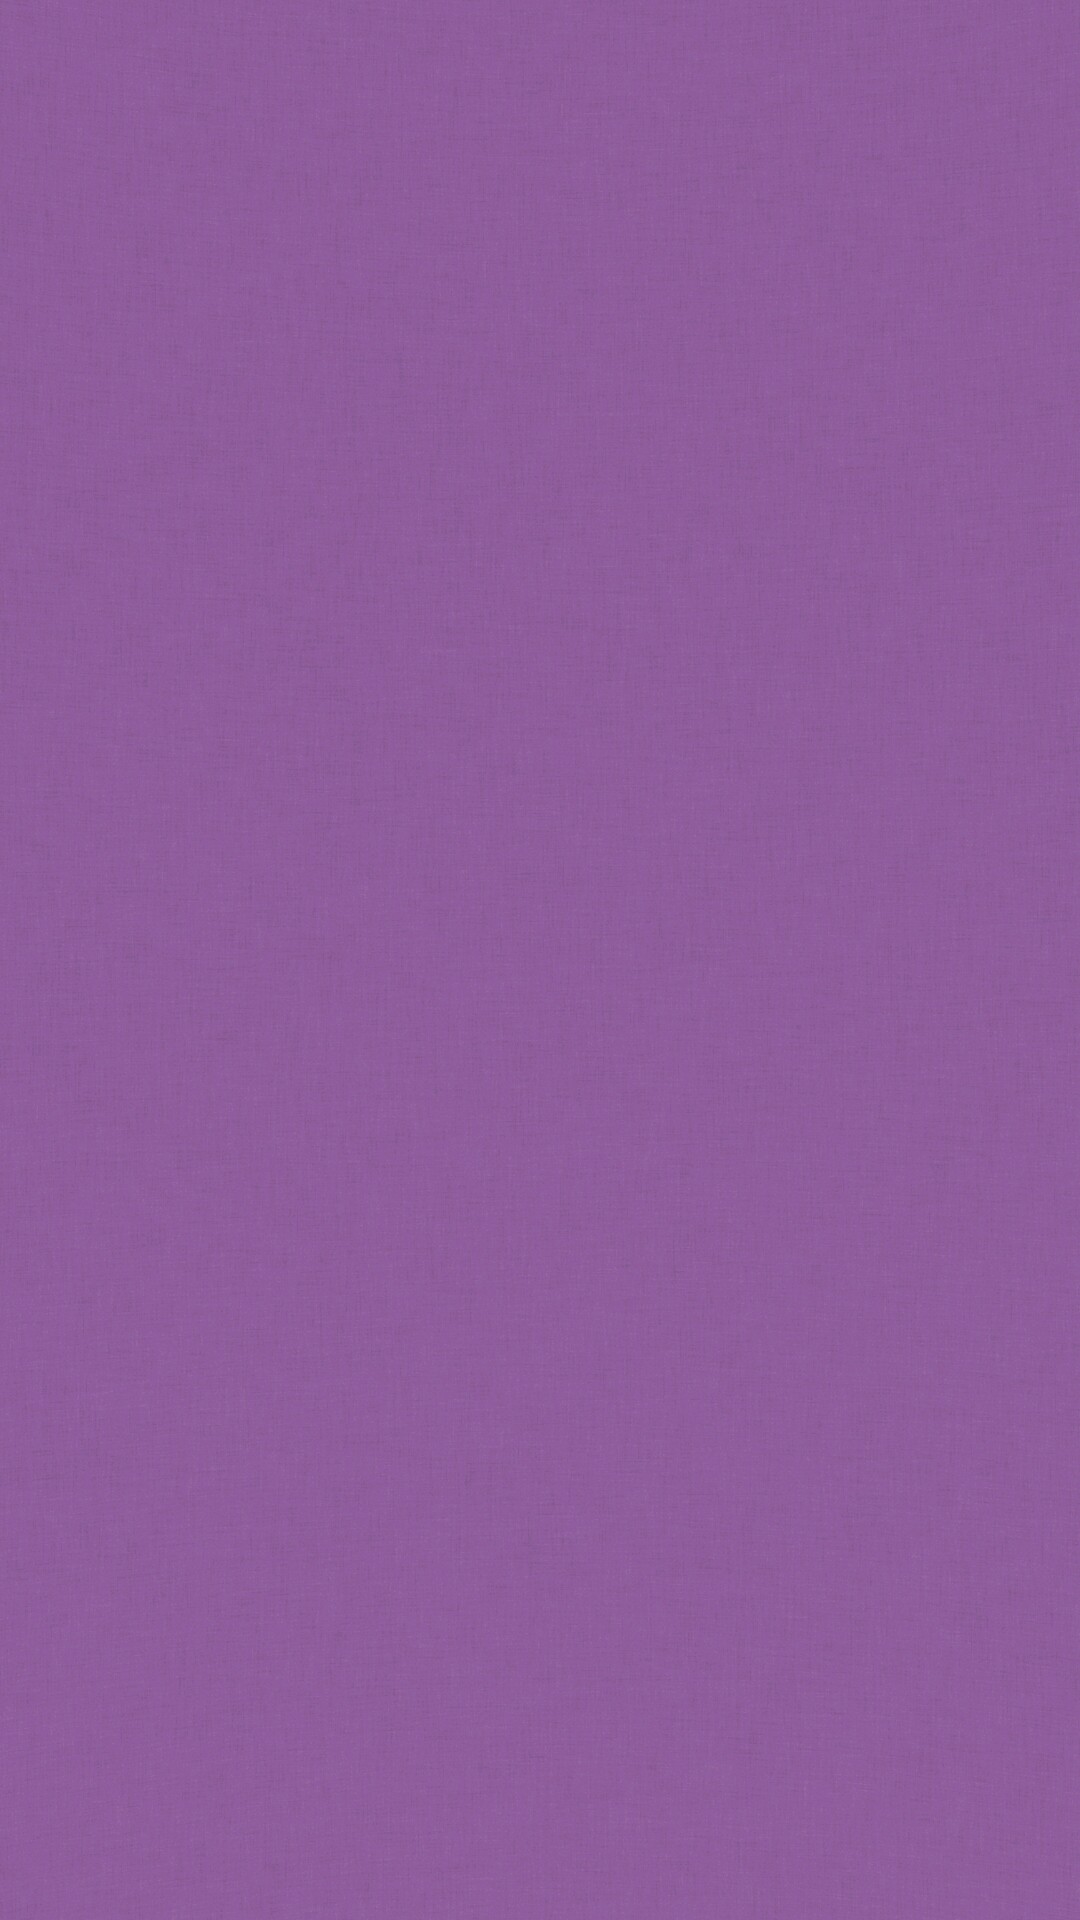 纸张背景纯紫色 免费图片 - Public Domain Pictures